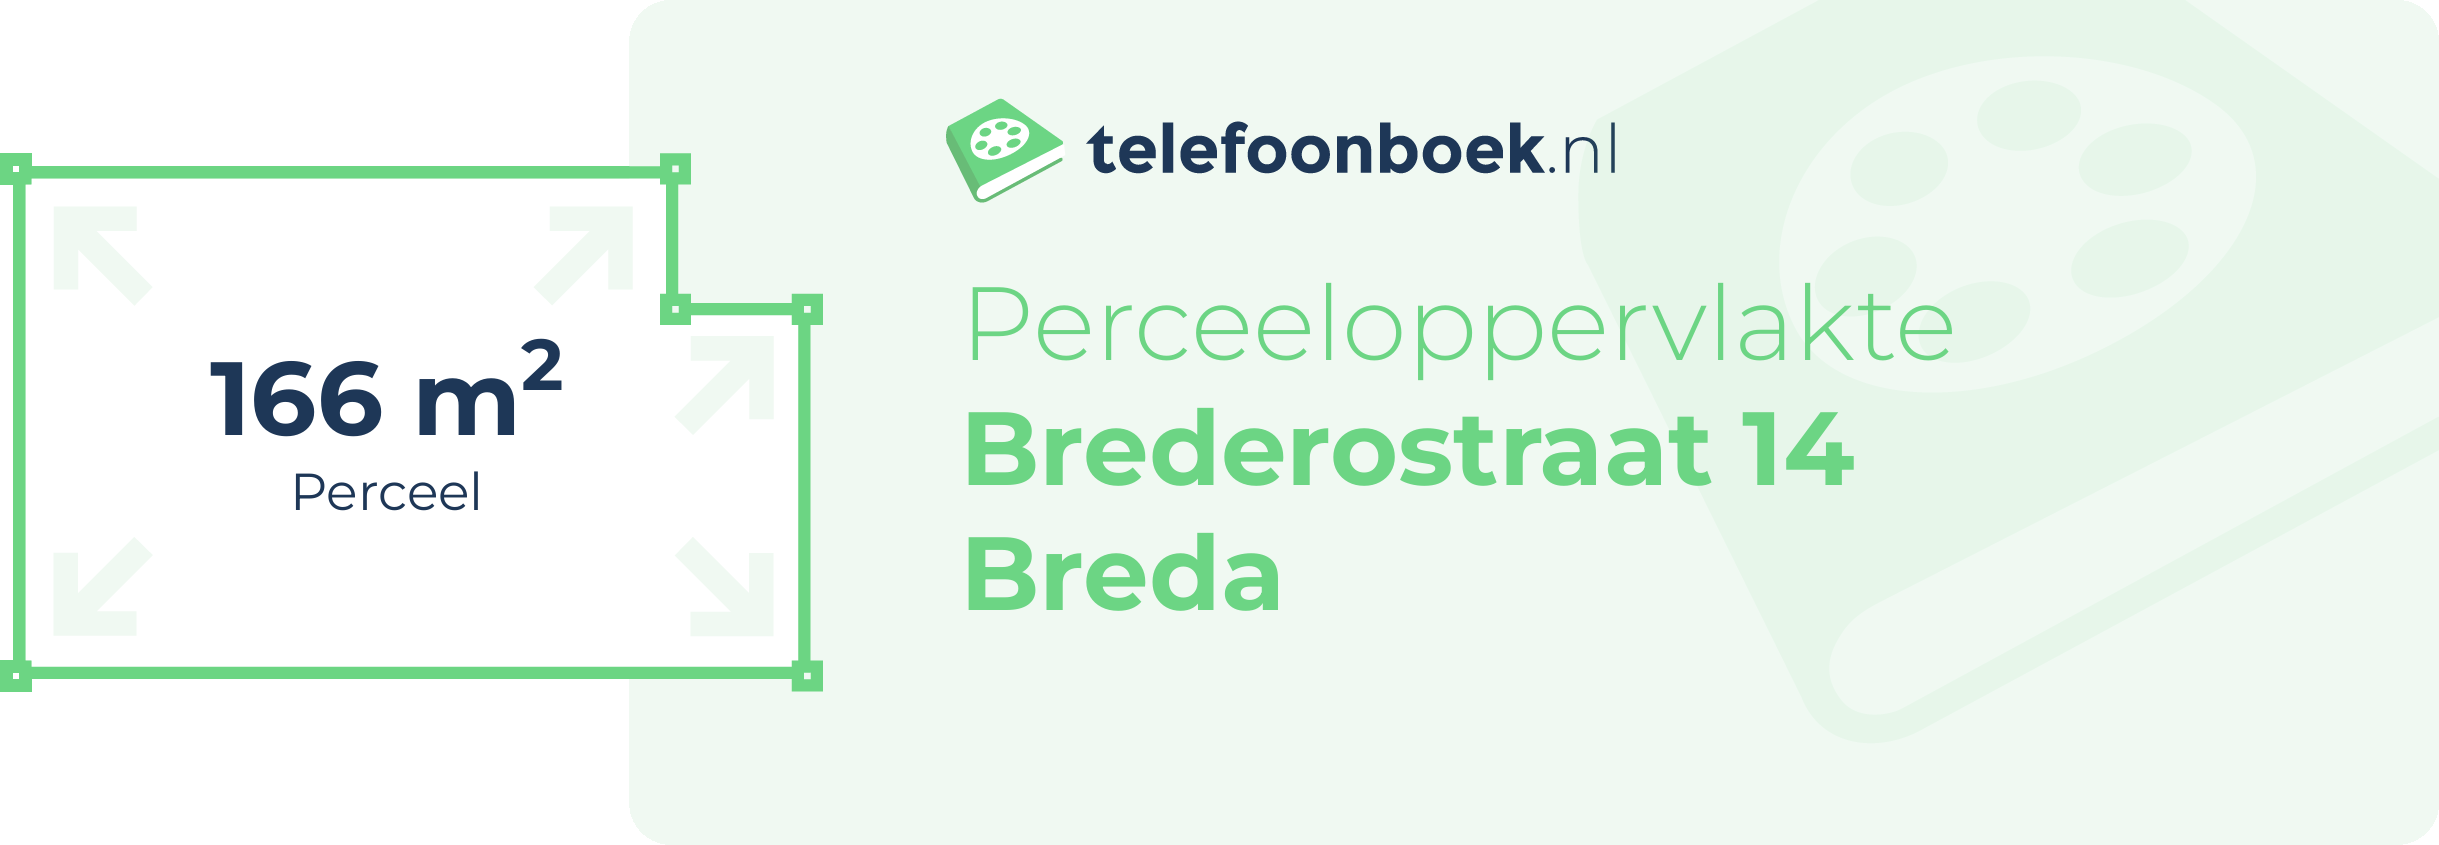 Perceeloppervlakte Brederostraat 14 Breda